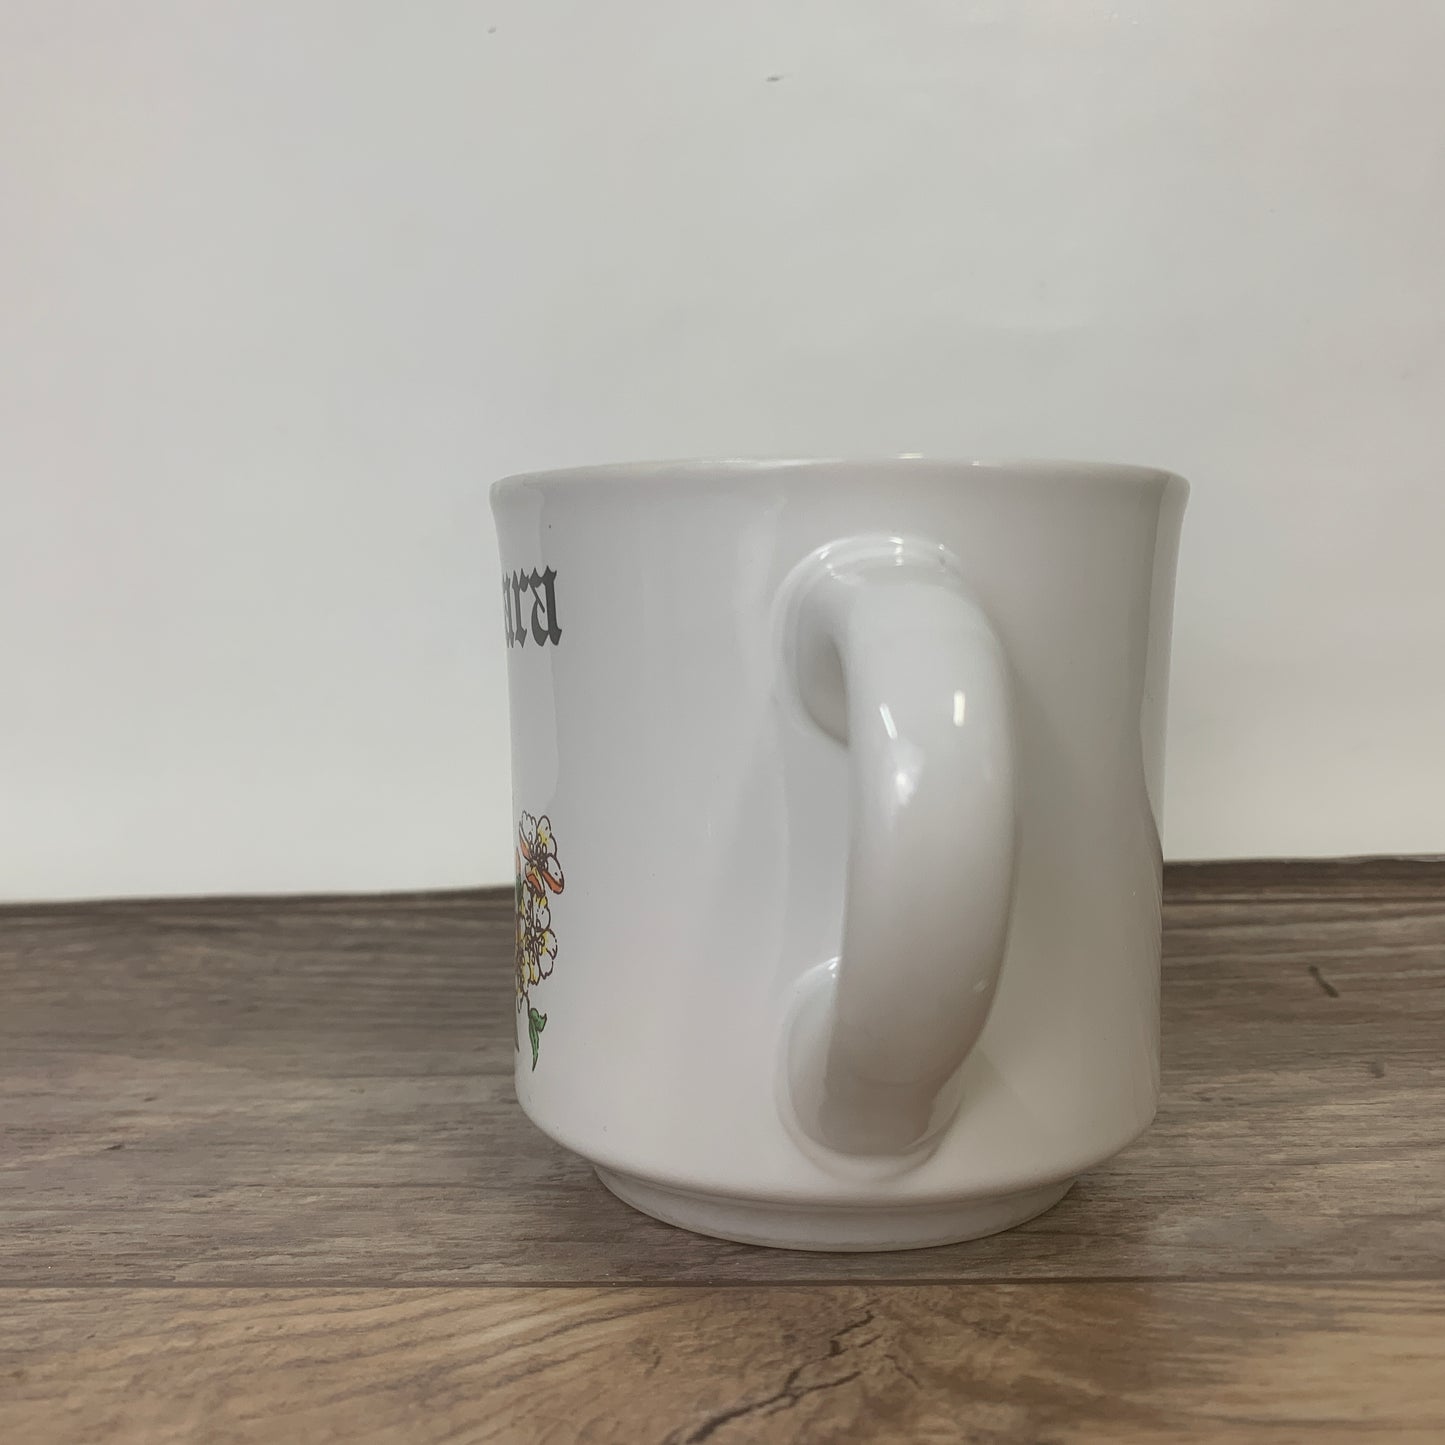 Vintage Papel Name Mug, Gift for Barbara, Coffee Mug with Name and White Flowers